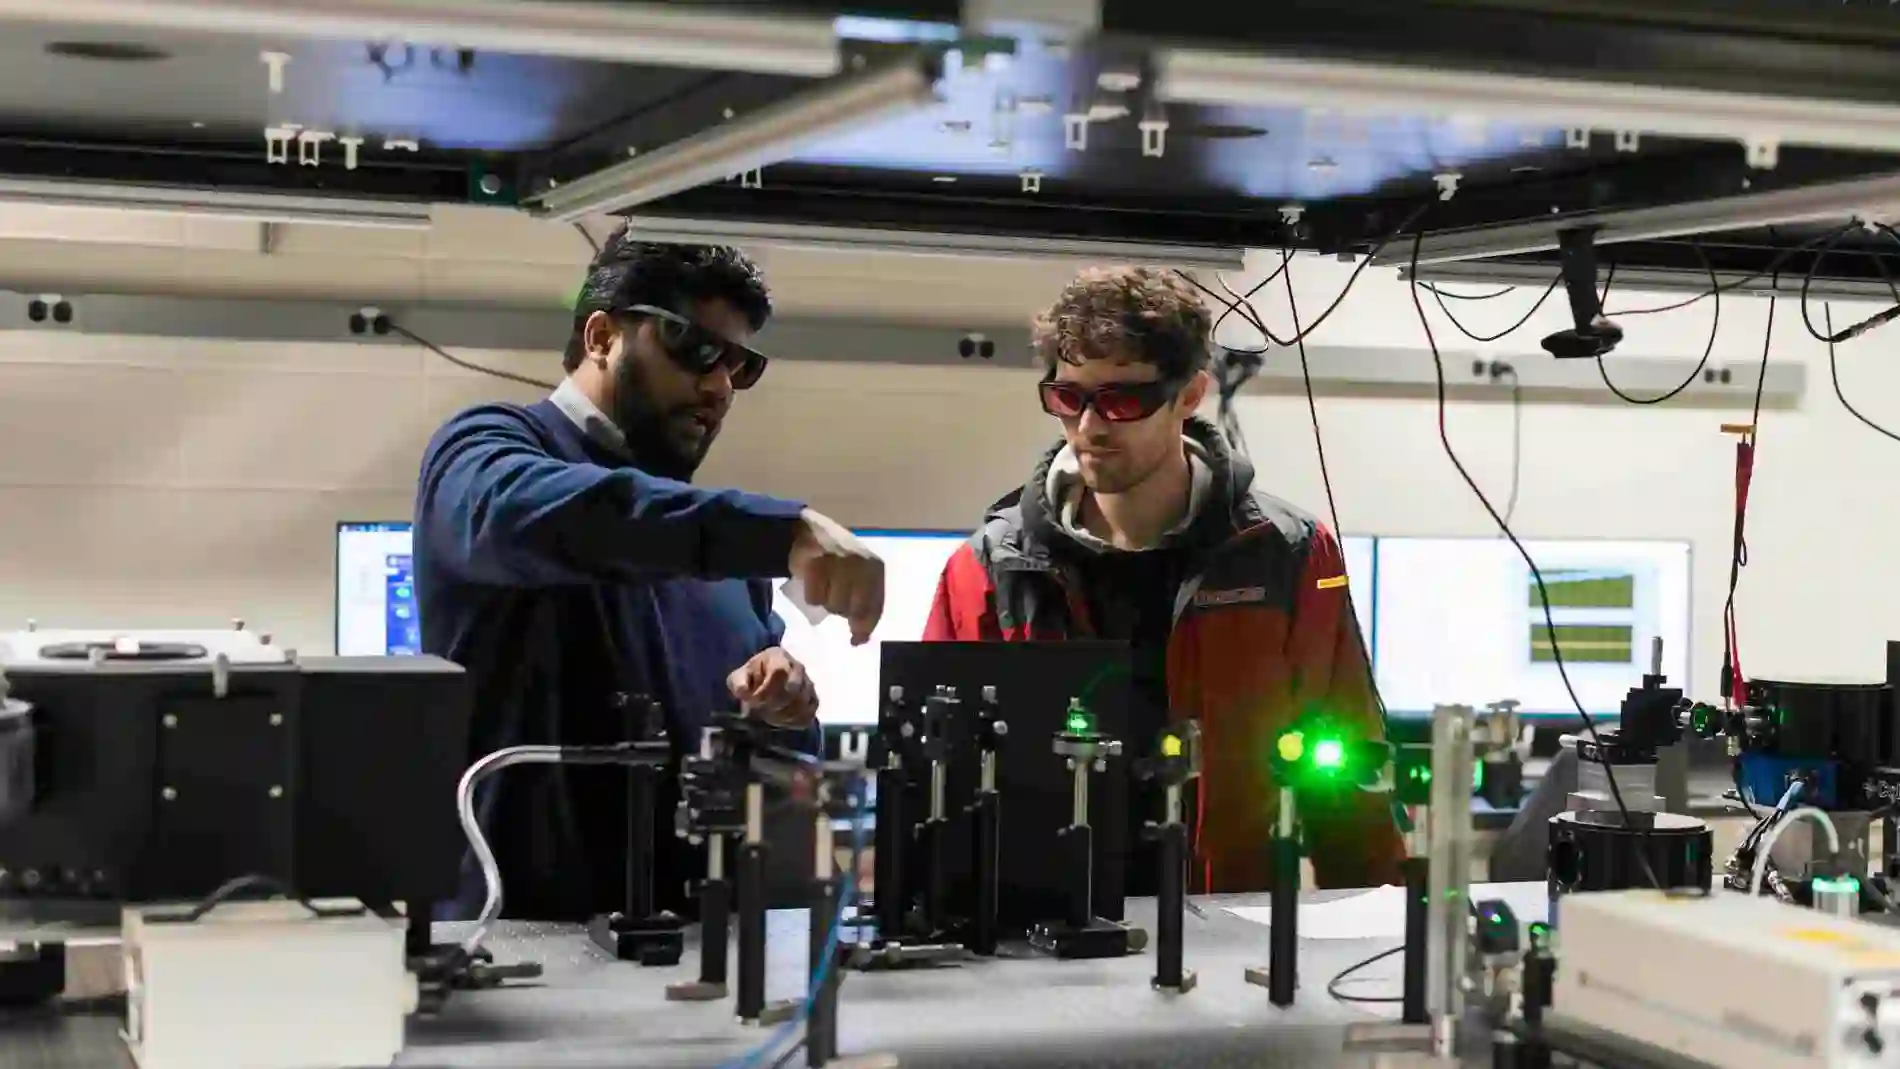 Los investigadores ajustan una matriz láser en su laboratorio de espectroscopia avanzada